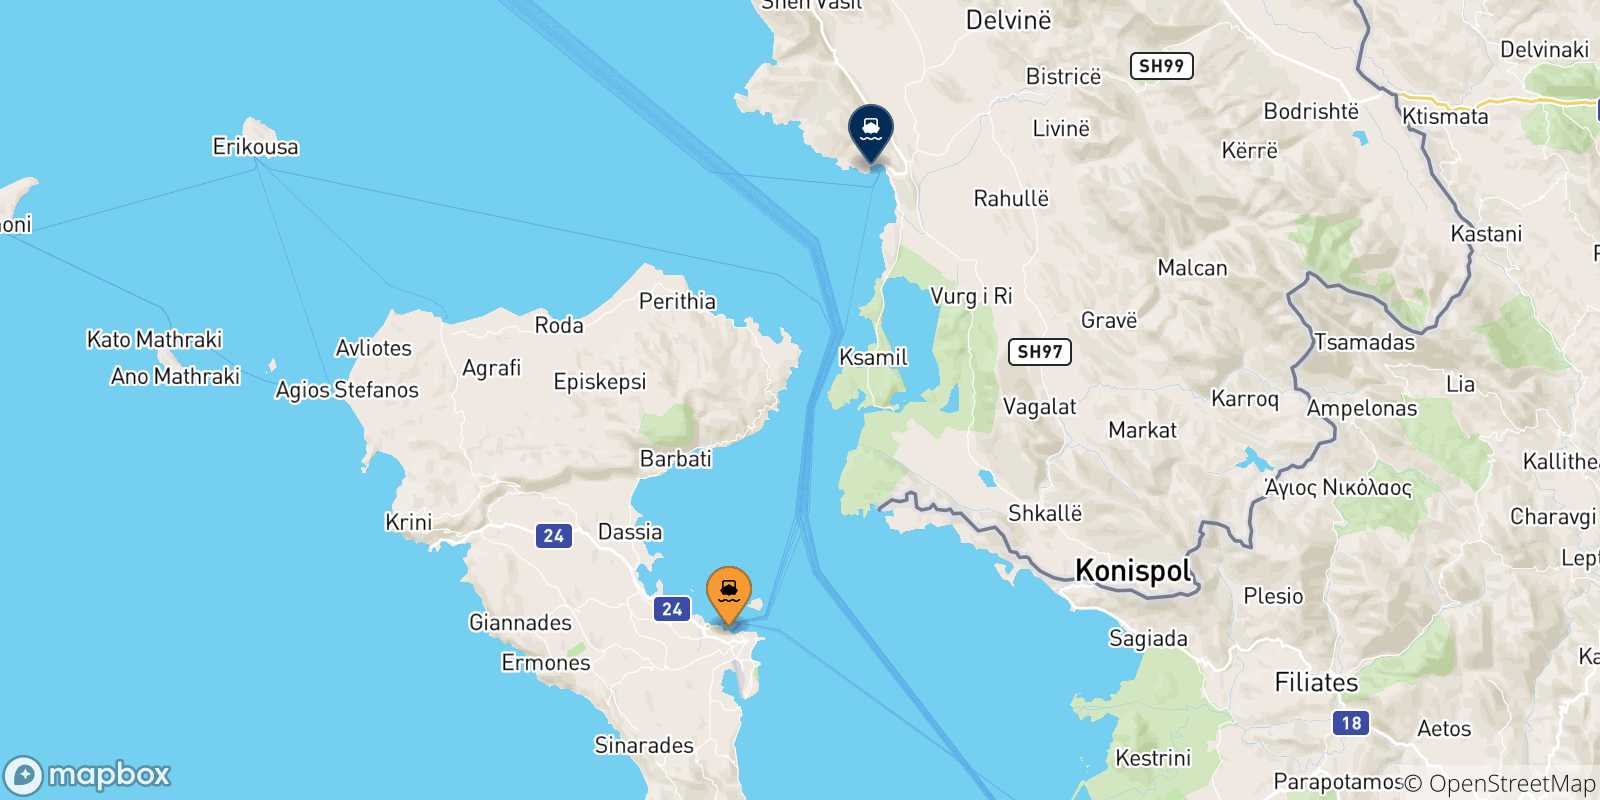 Mappa delle possibili rotte tra le Isole Ionie e l'Albania